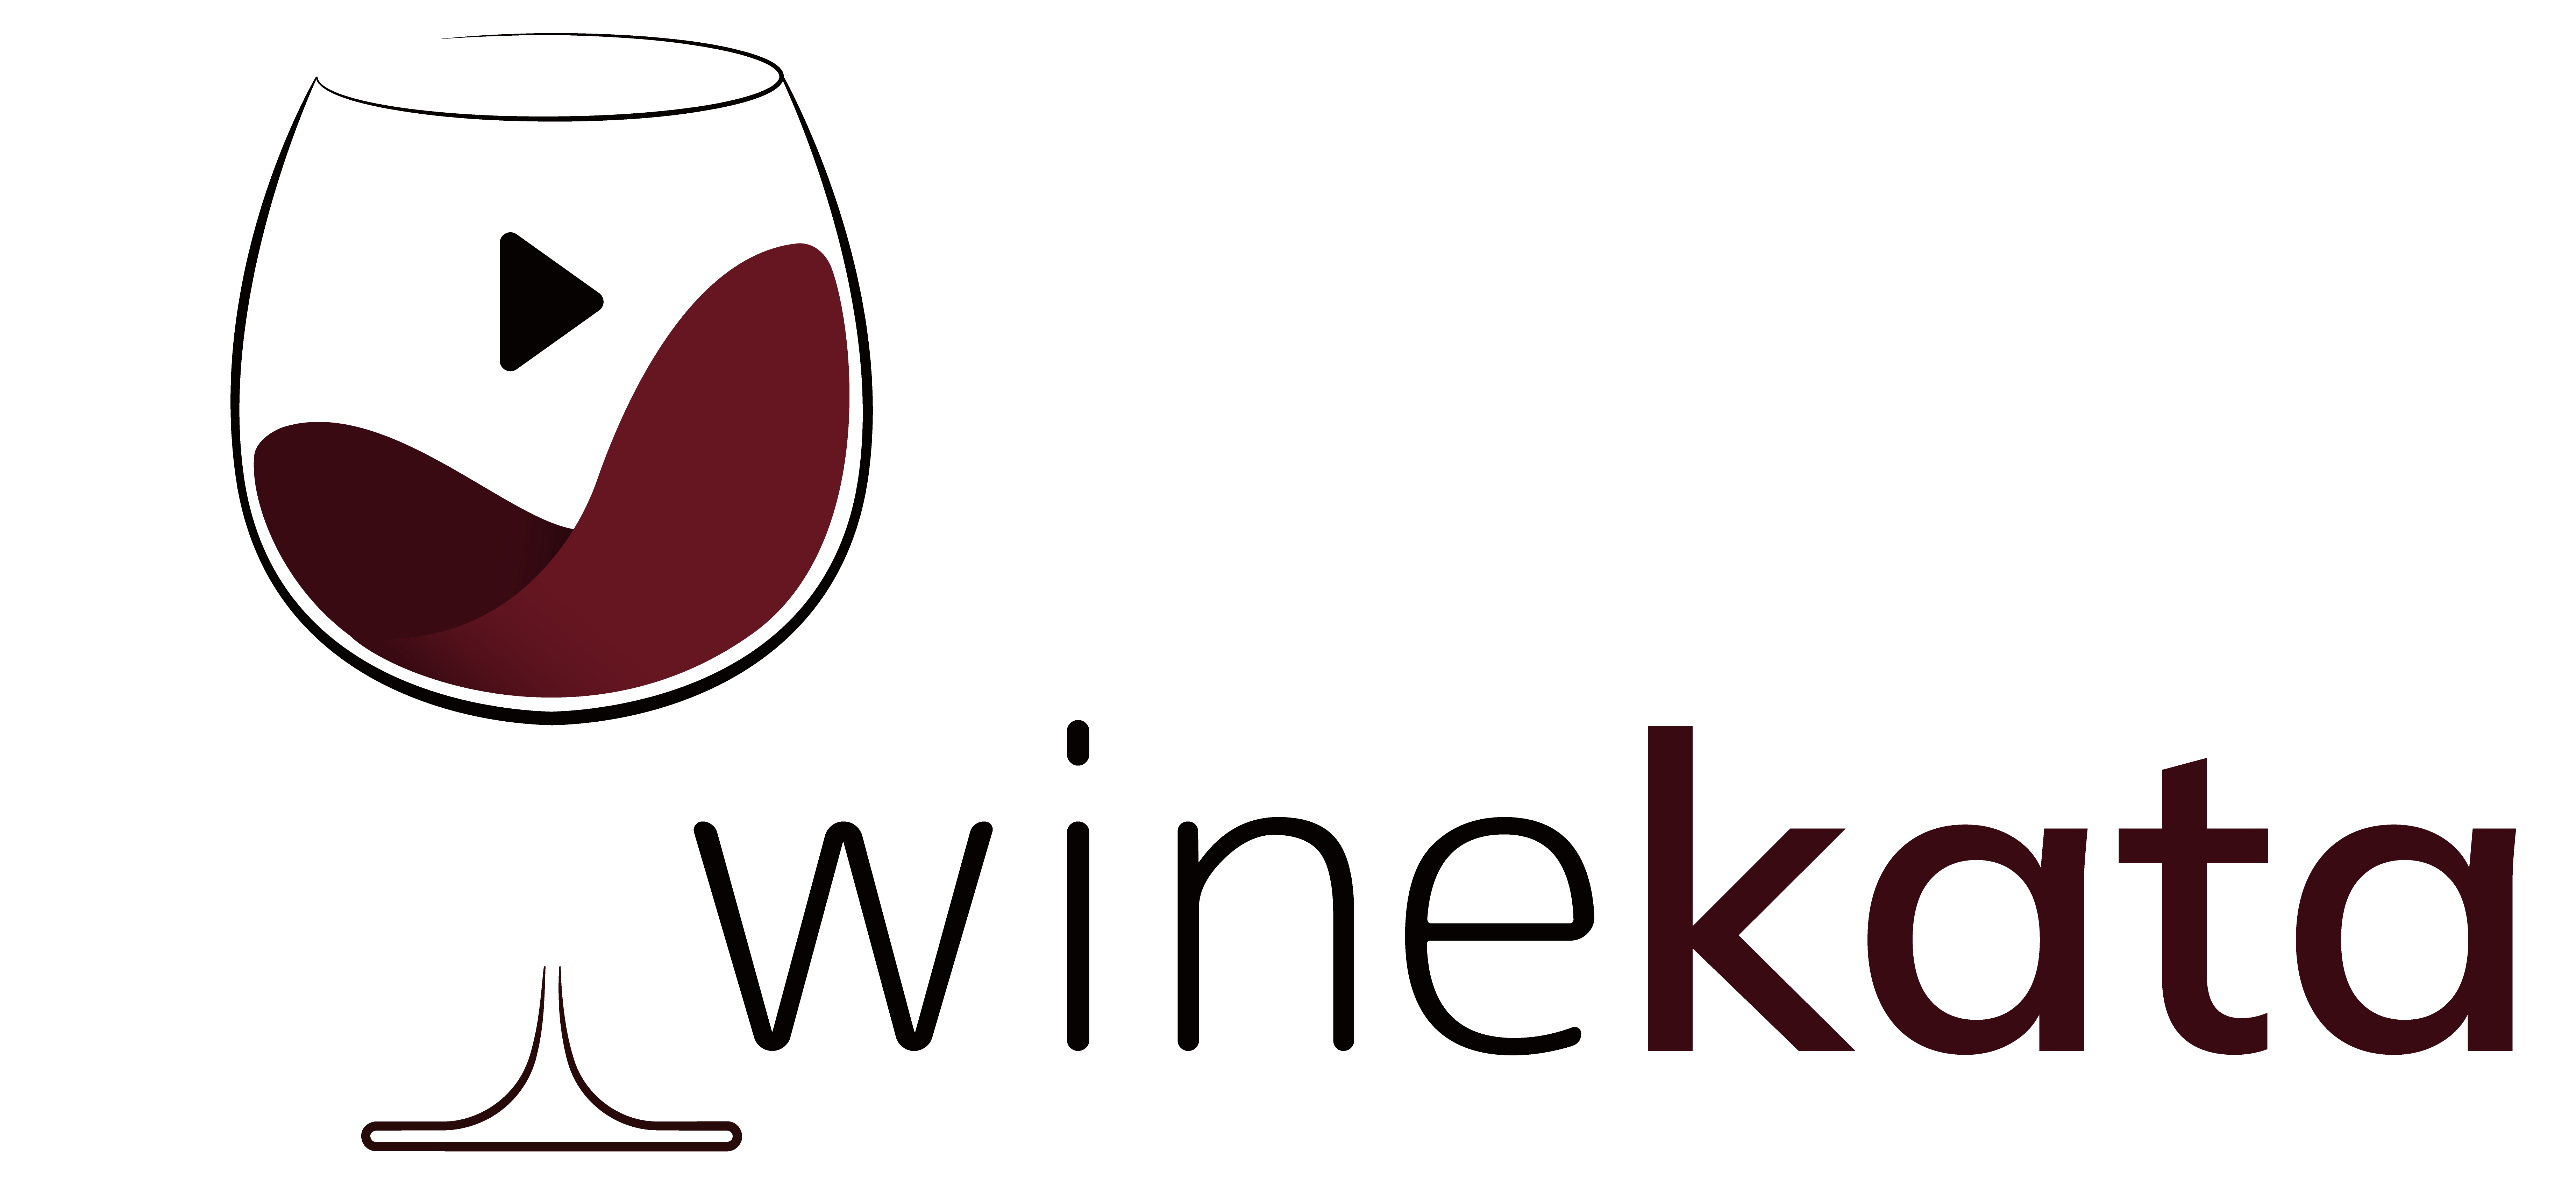 Winekata